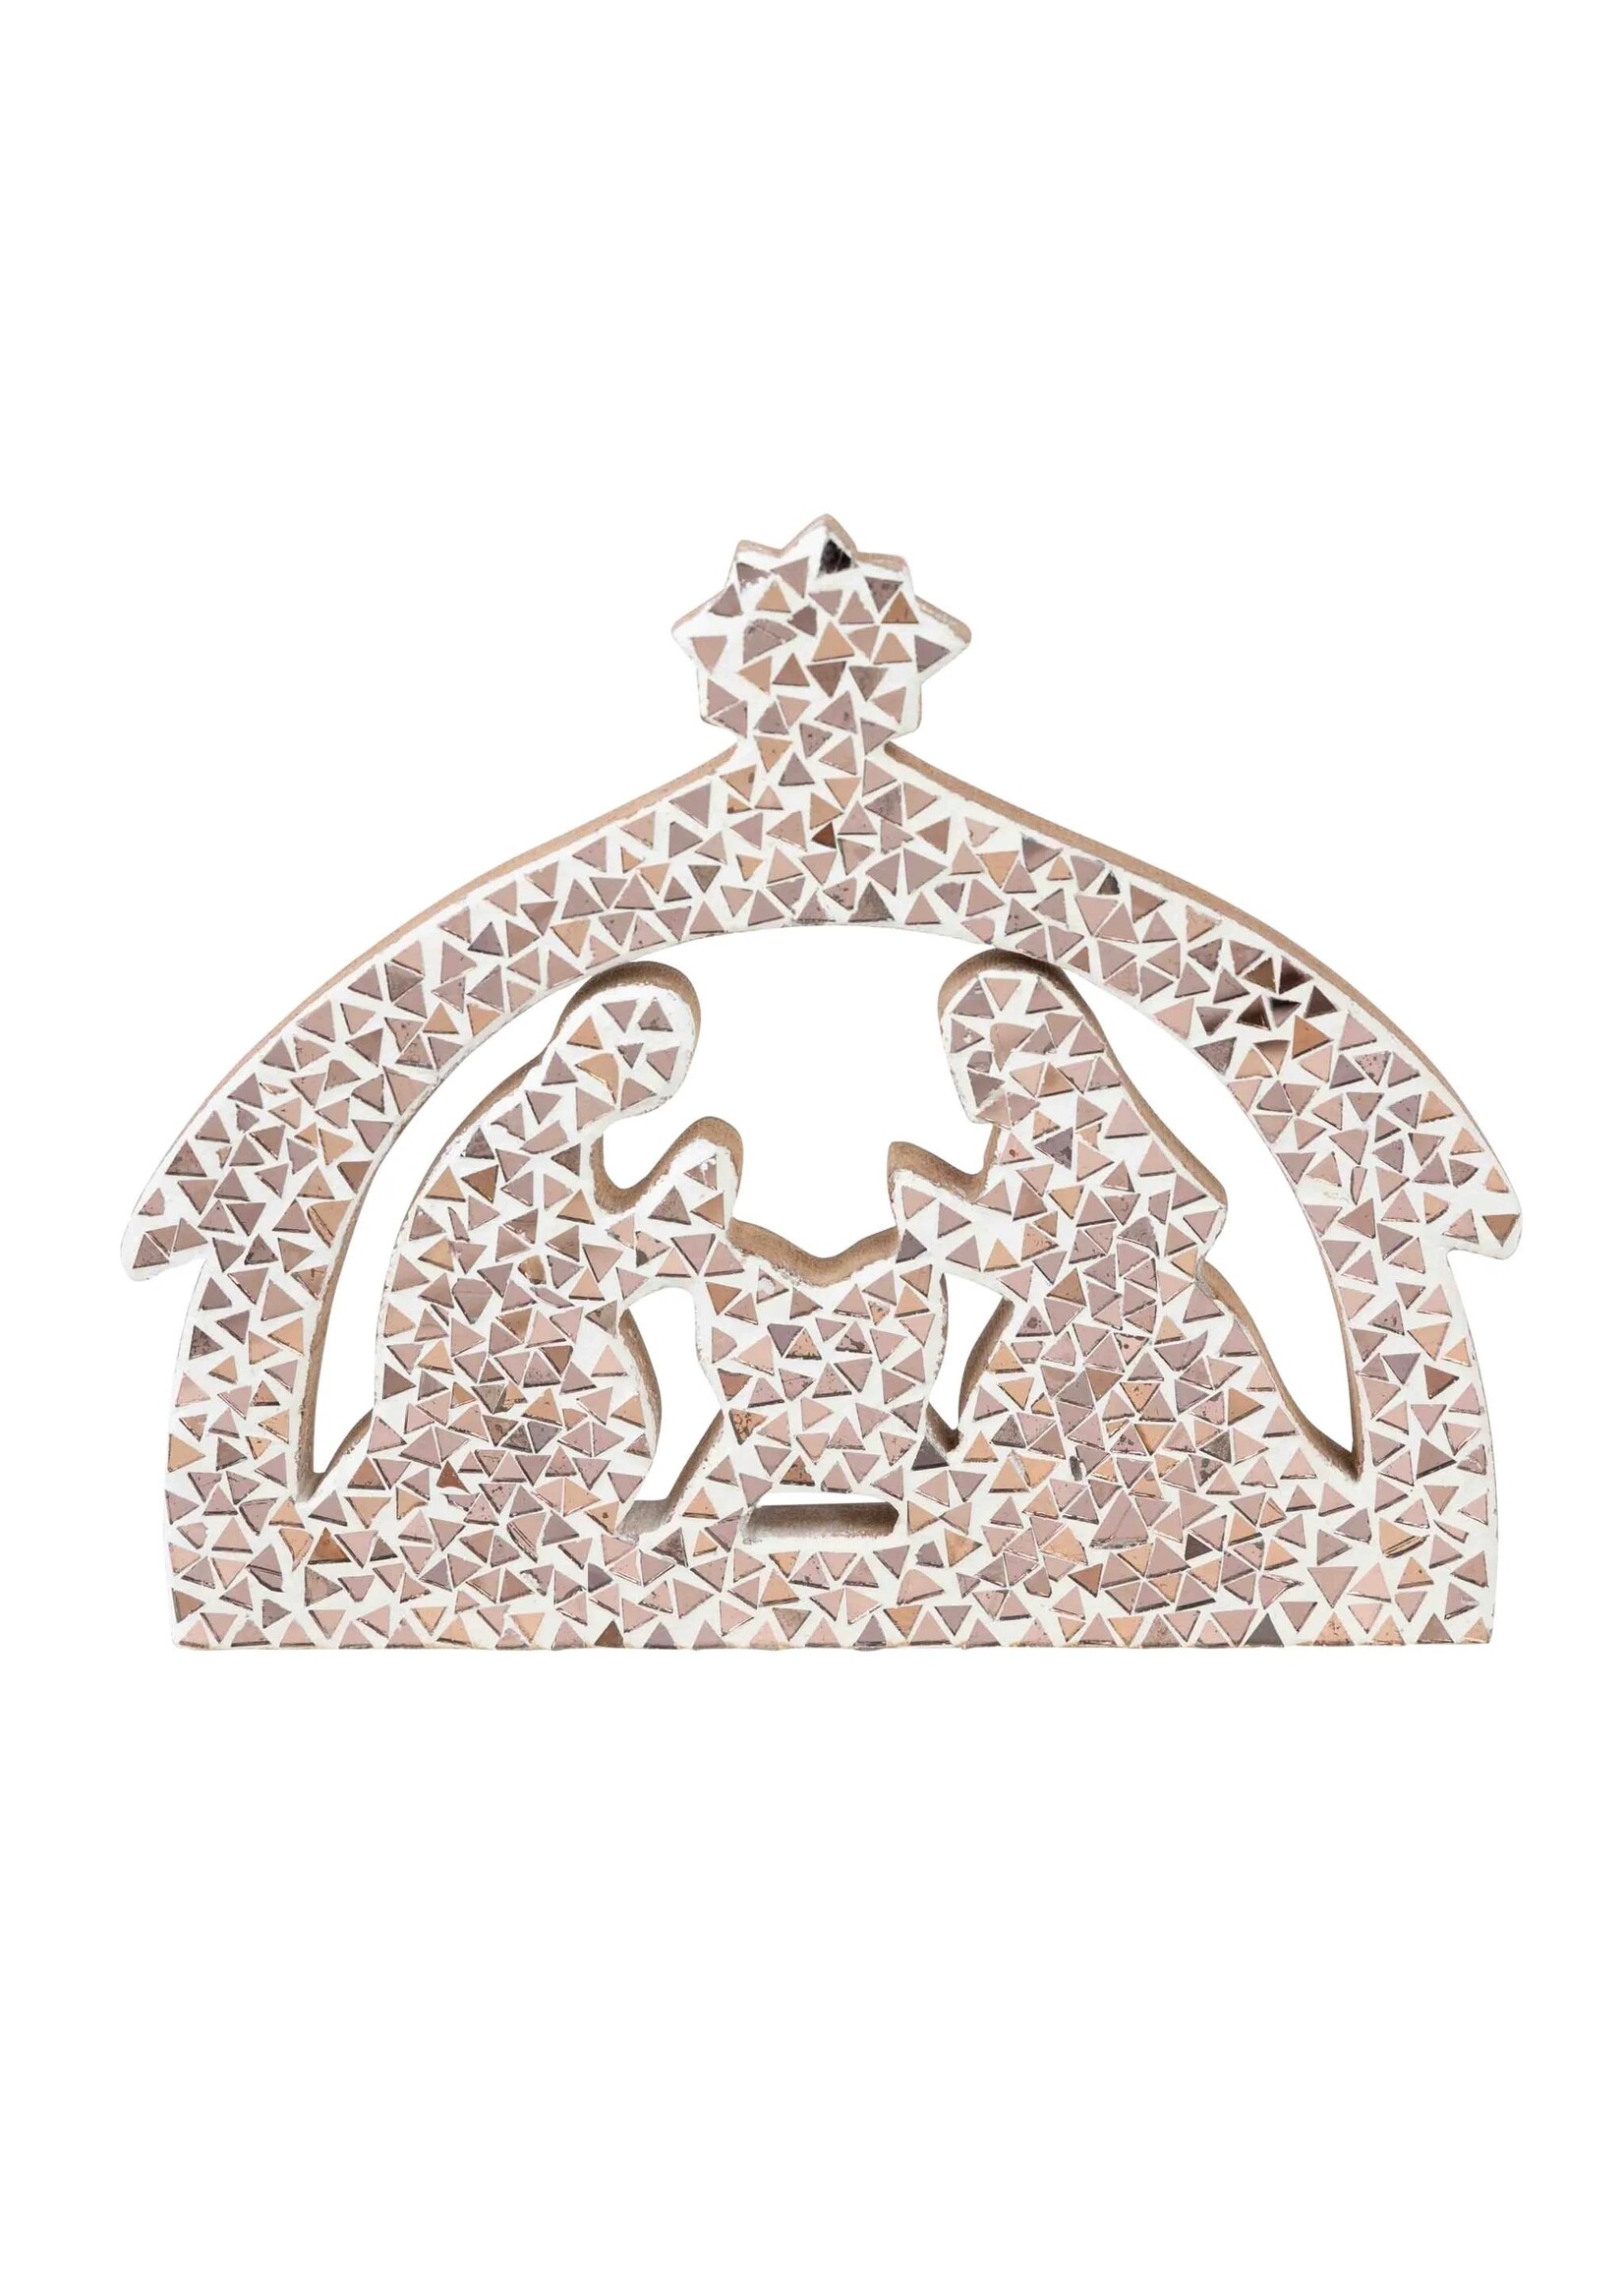 Nativity - Mosaic Holy Family